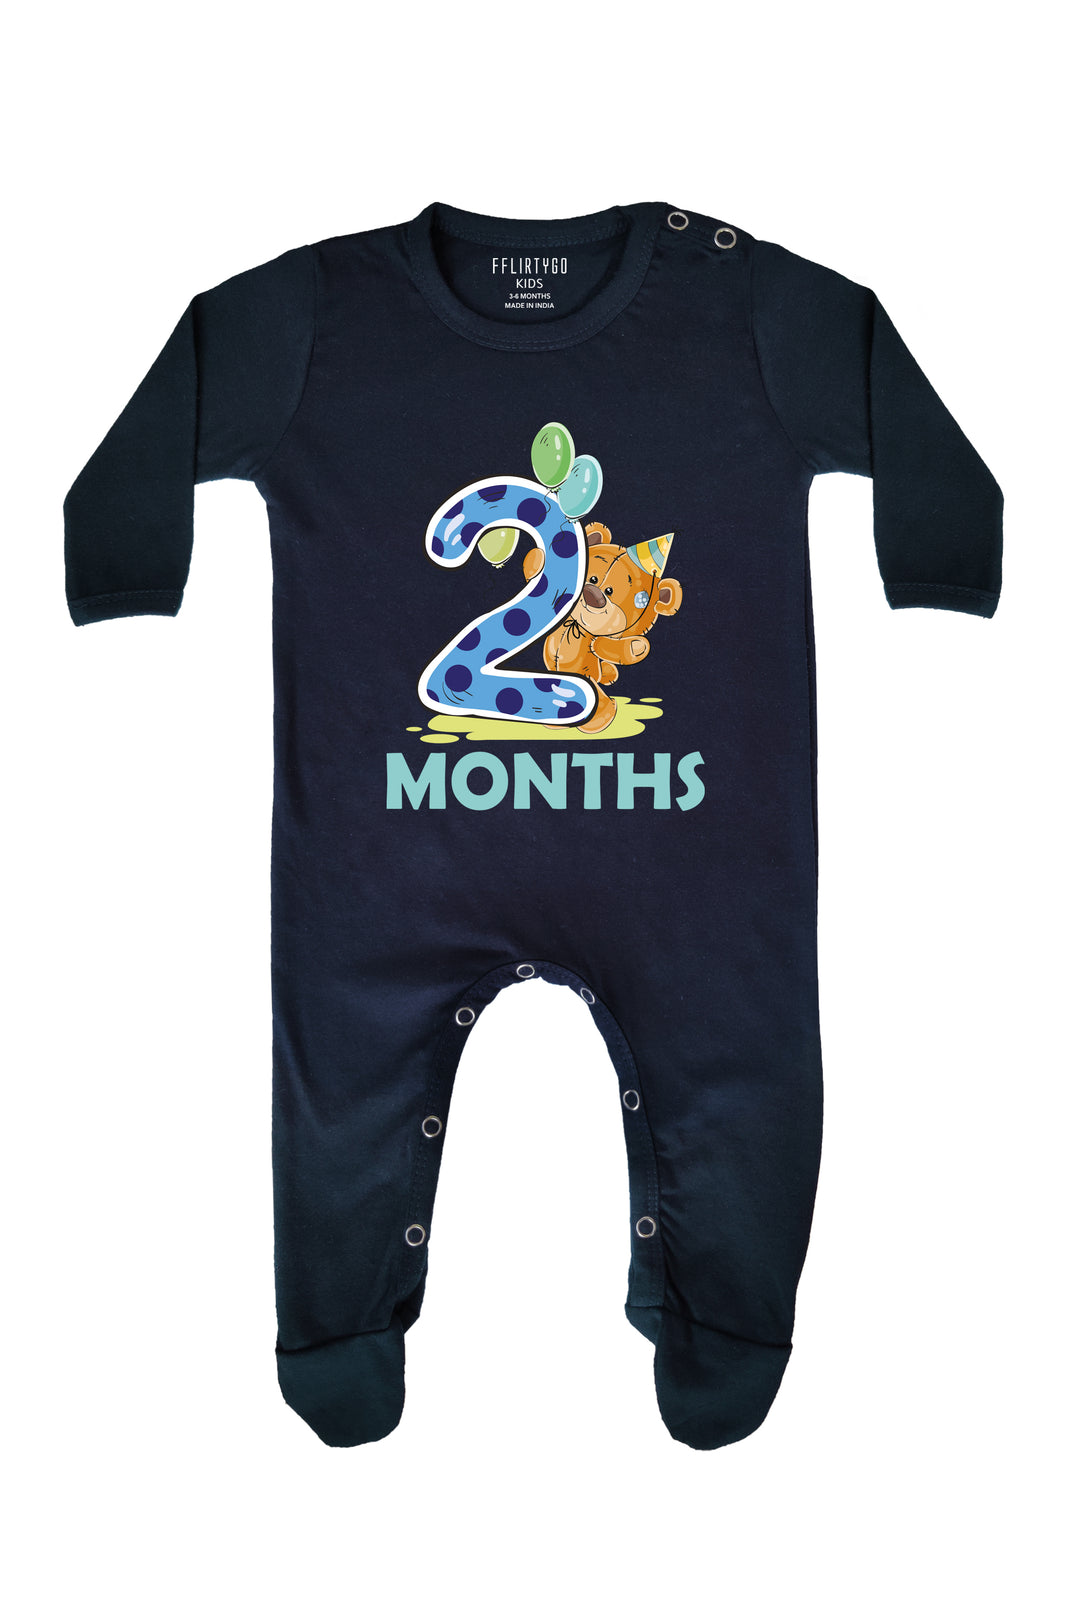 Two Months Milestone Baby Romper | Onesies